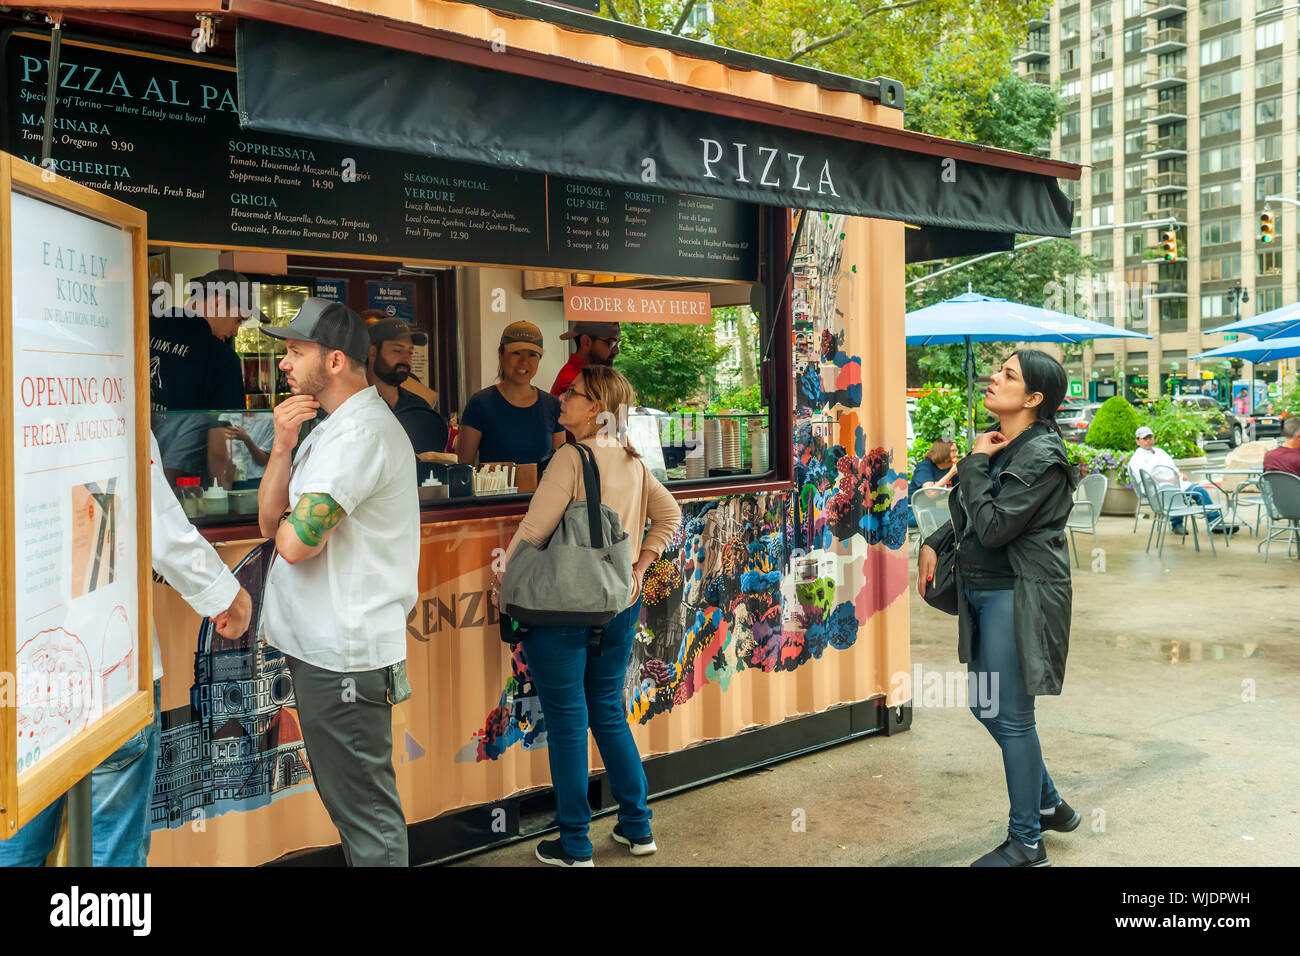 Le nouveau kiosque Eataly à Flatiron Plaza, en face de l'Italien Eataly Emporium, le jour de l'ouverture à New York, le Vendredi, Août 23, 2019. Le nouveau kiosque, nommé de façon appropriée, "Eataly à Flatiron Plaza", sert des pizzas al Padellino et gelato. Pizza al Padellino est une spécialité de la région du Piémont en Italie. (© Richard B. Levine) Banque D'Images